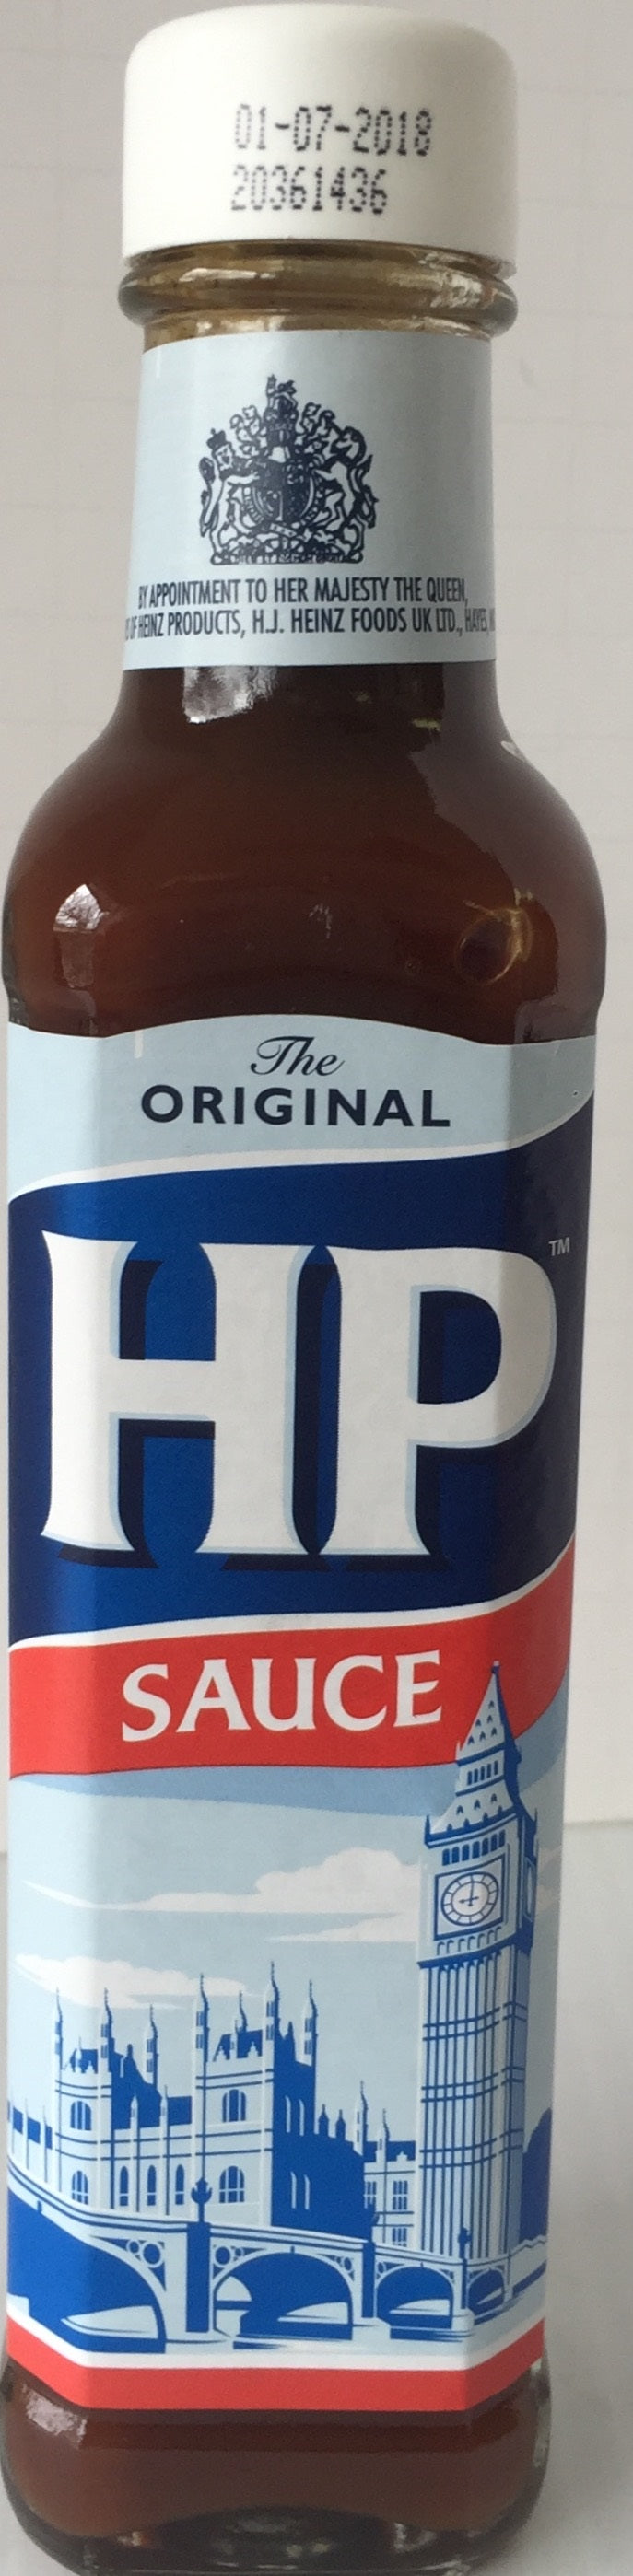 HP Sauce 255g bottle x 12